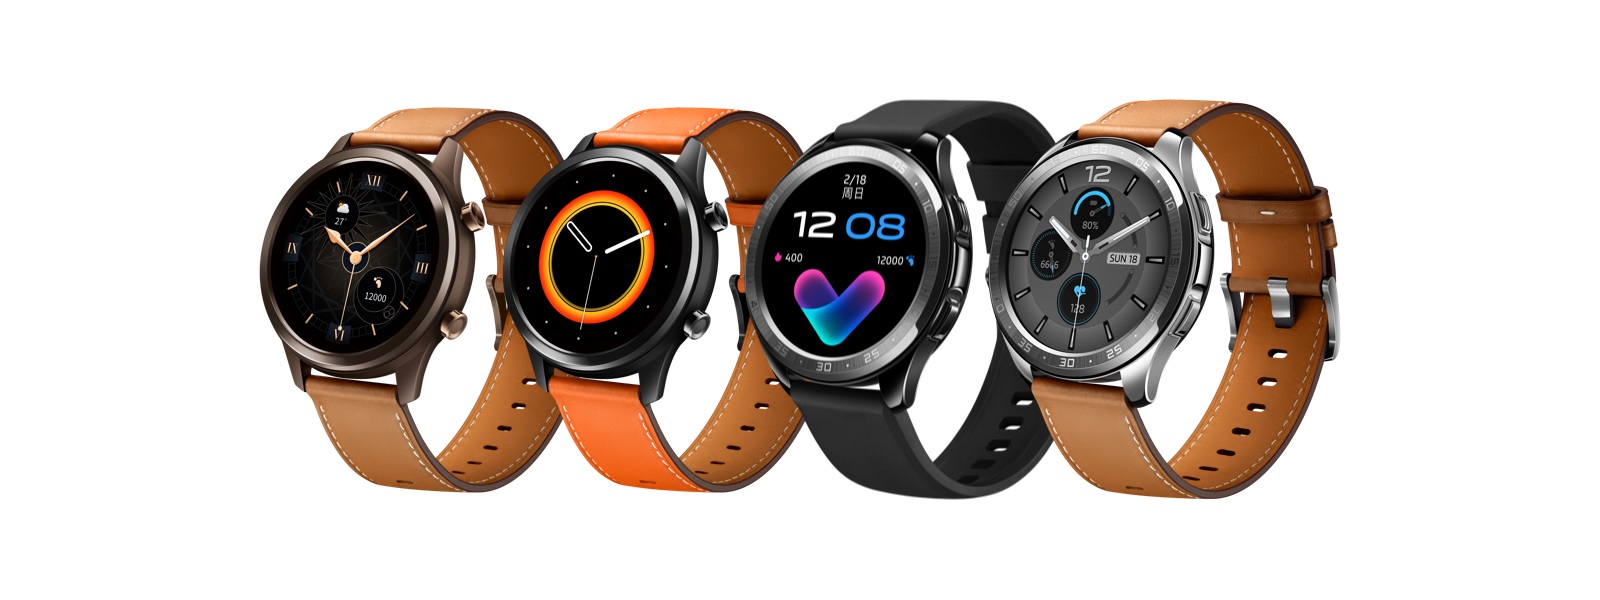 Vivo apresentou seu primeiro smartwatch - Vivo Ver. Parece legal 2